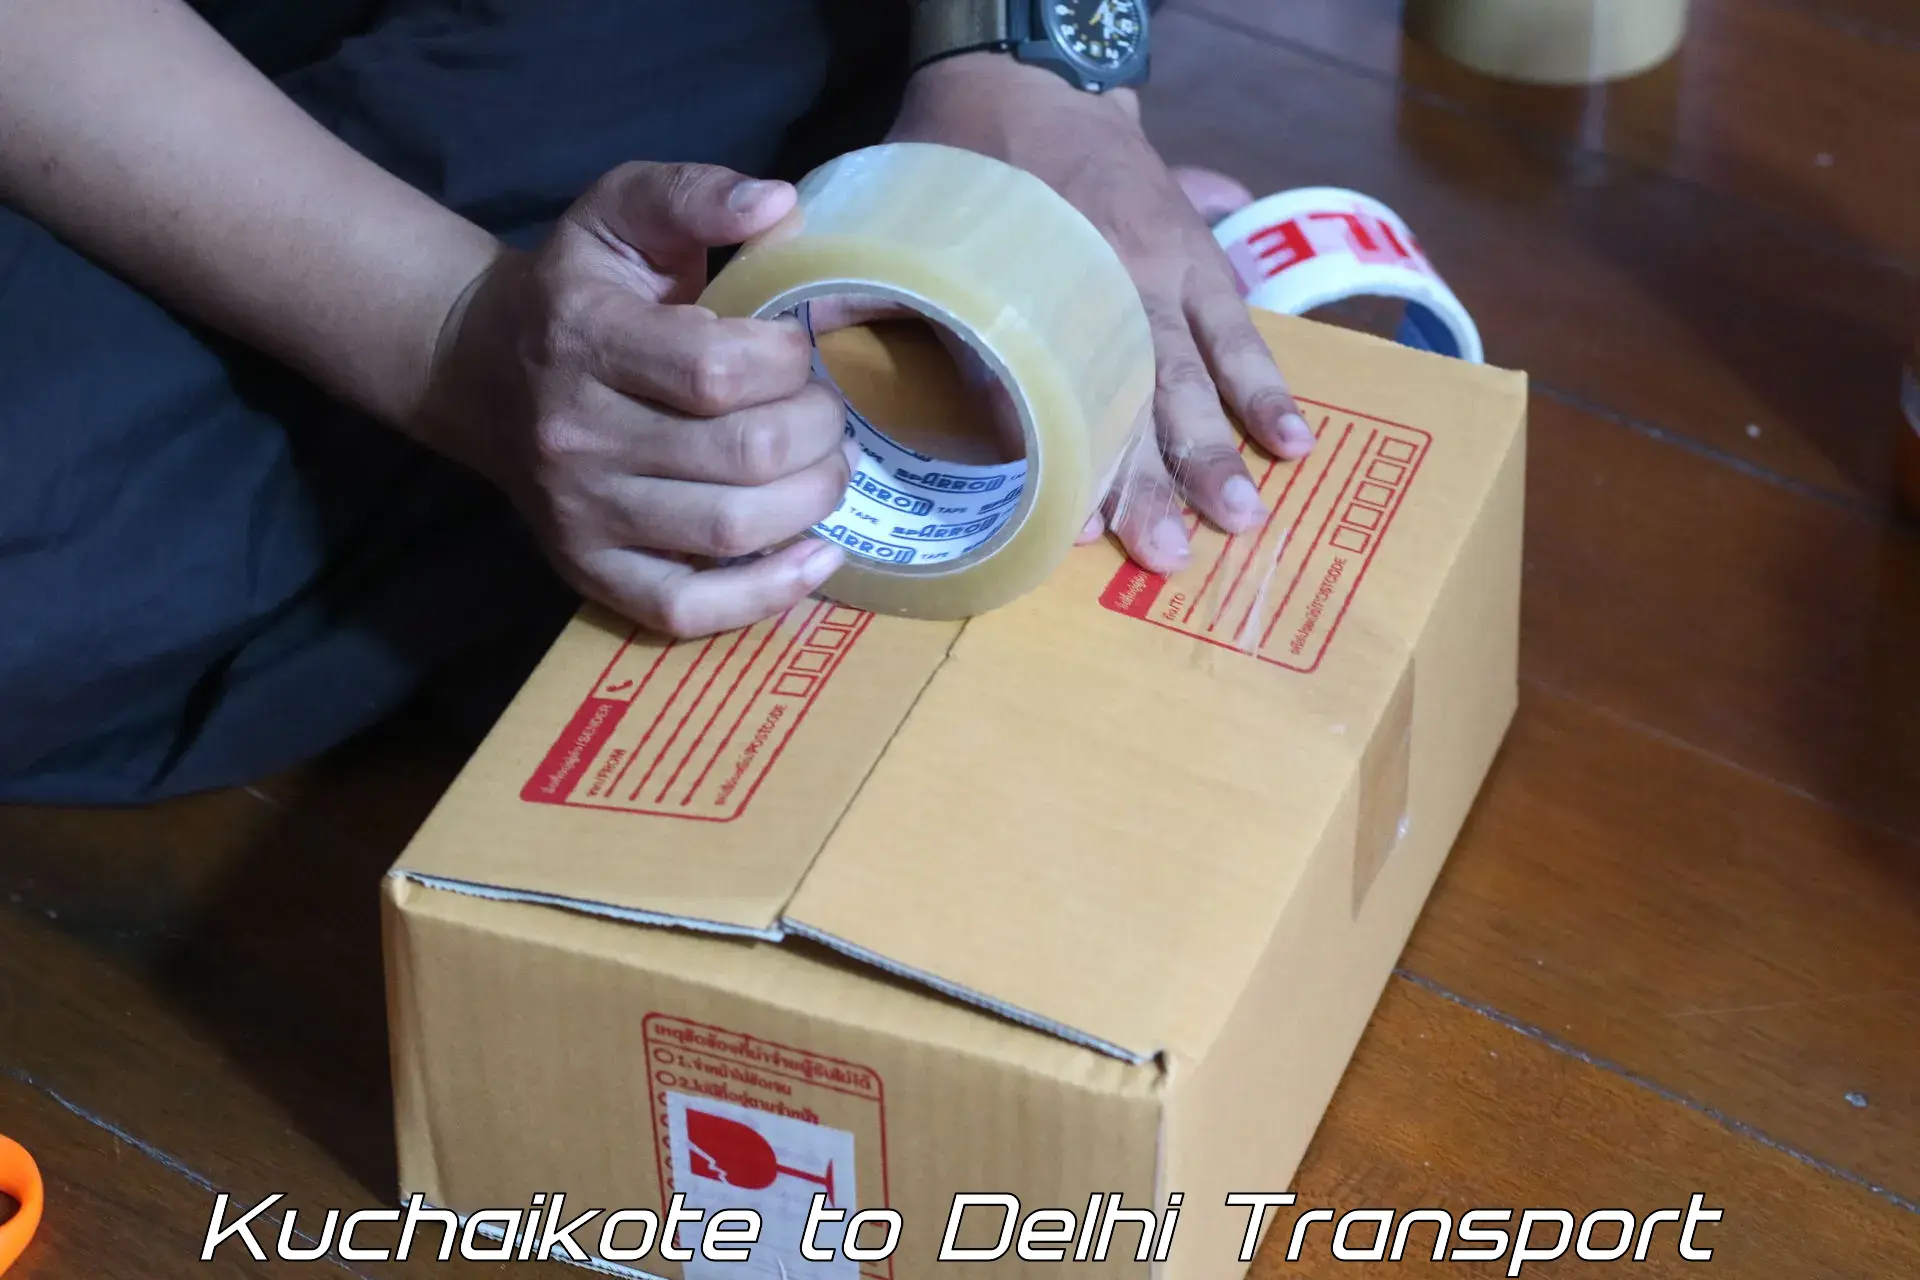 Road transport services Kuchaikote to Delhi